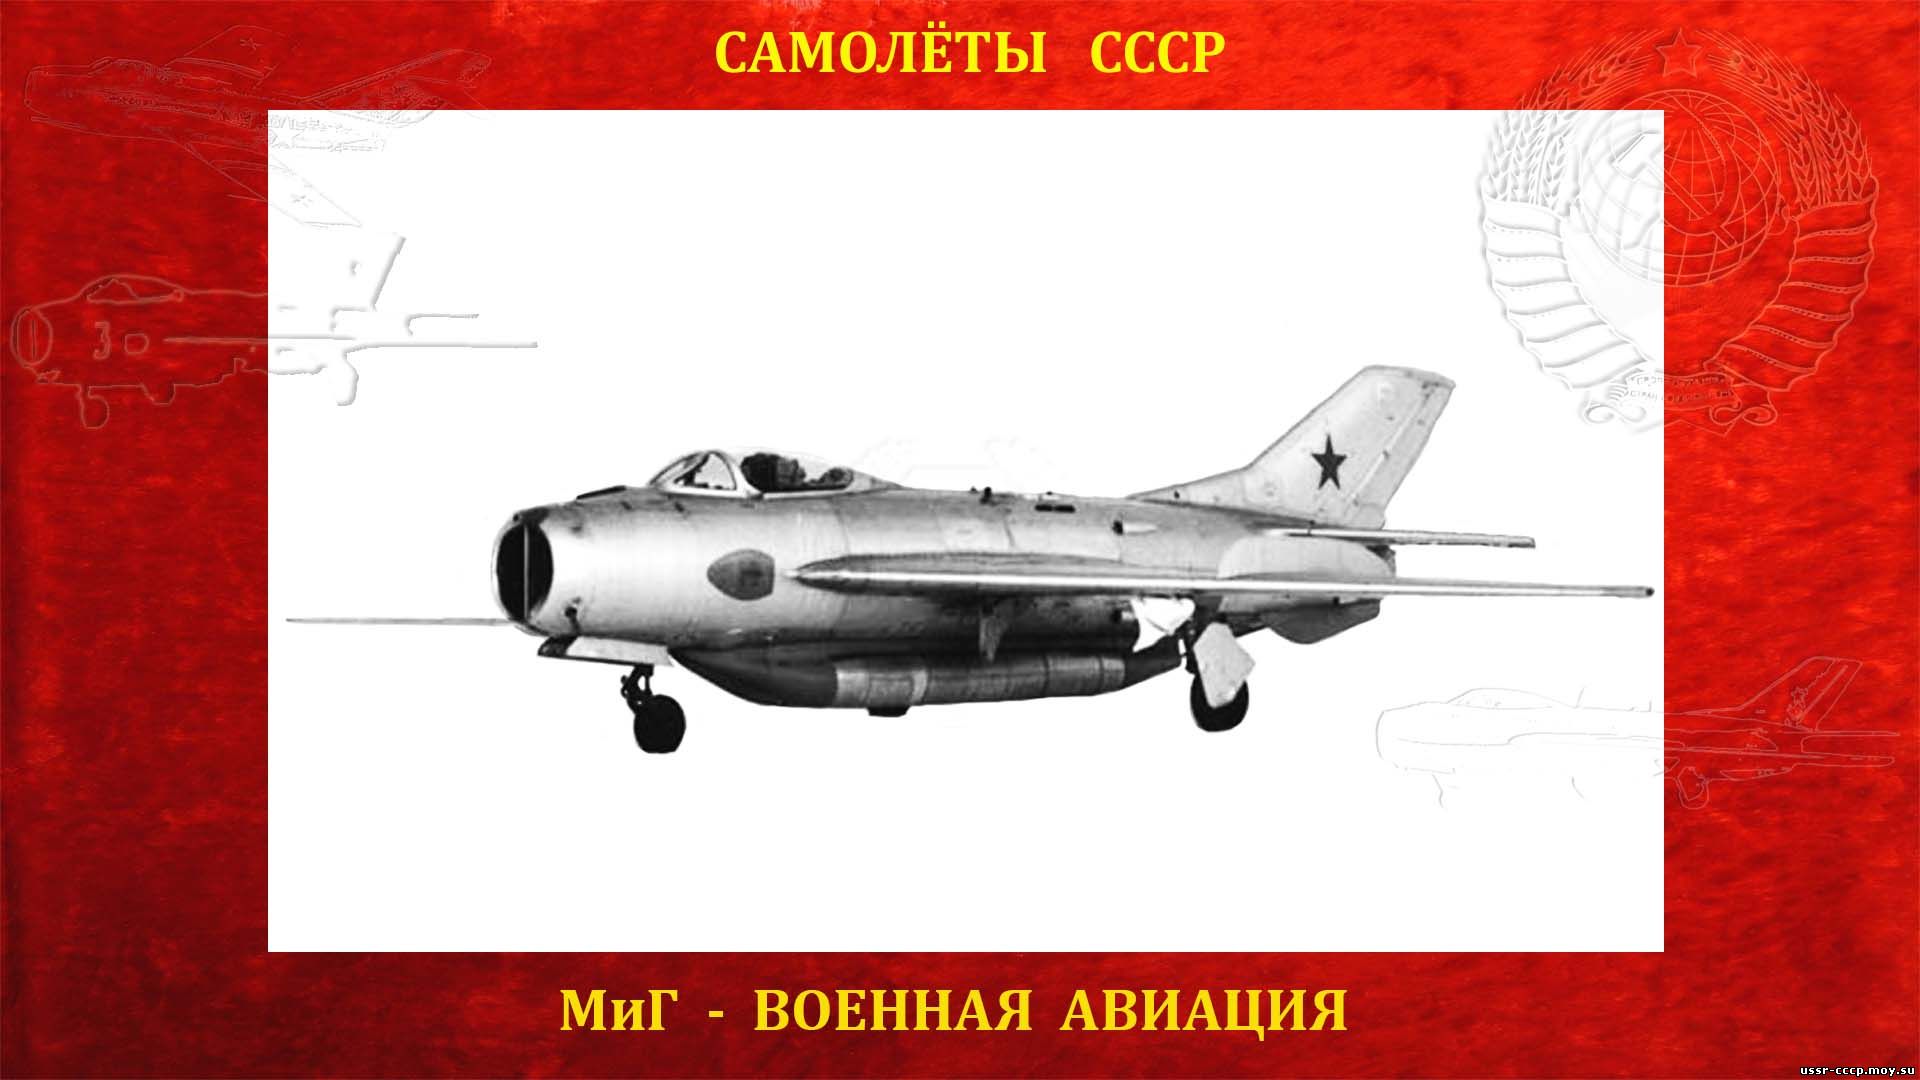 МиГ-19СУ (СМ-50) - Реактивный высотный истребитель - Самолёт СССР (Полное повествование)